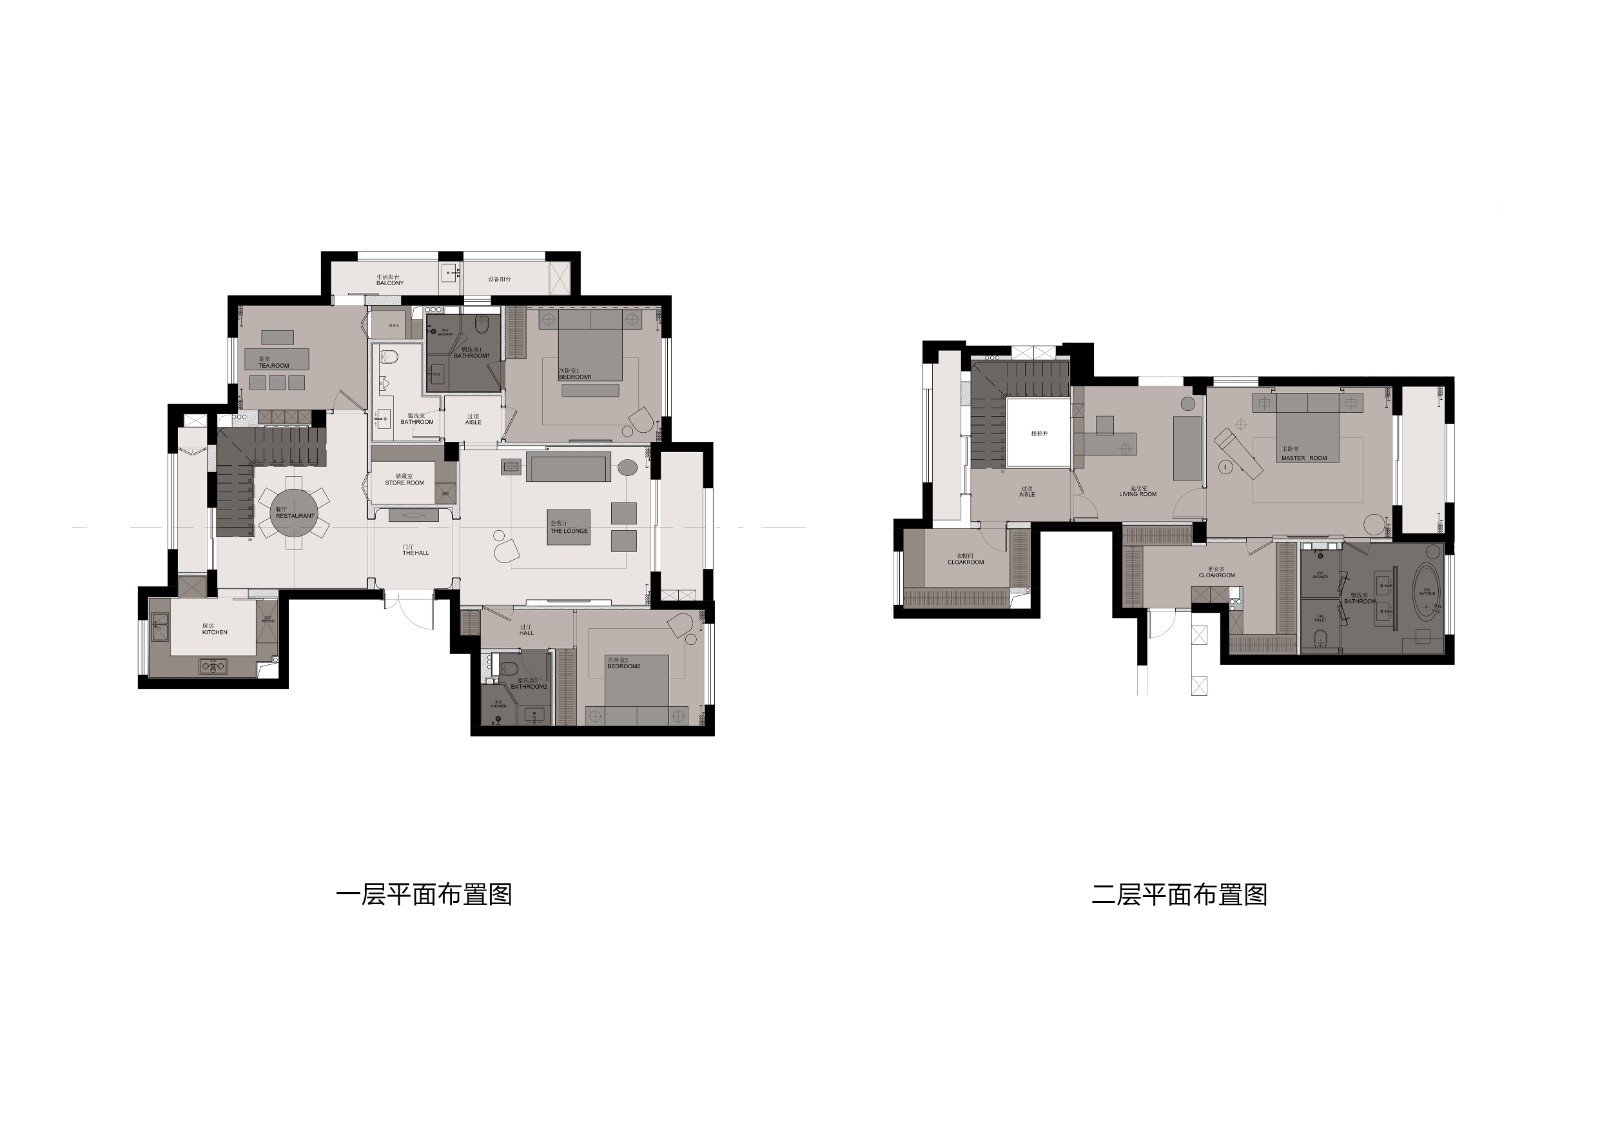 130现代三房装修效果图,功能与美学的平衡装修案例效果图-美广网(图1)